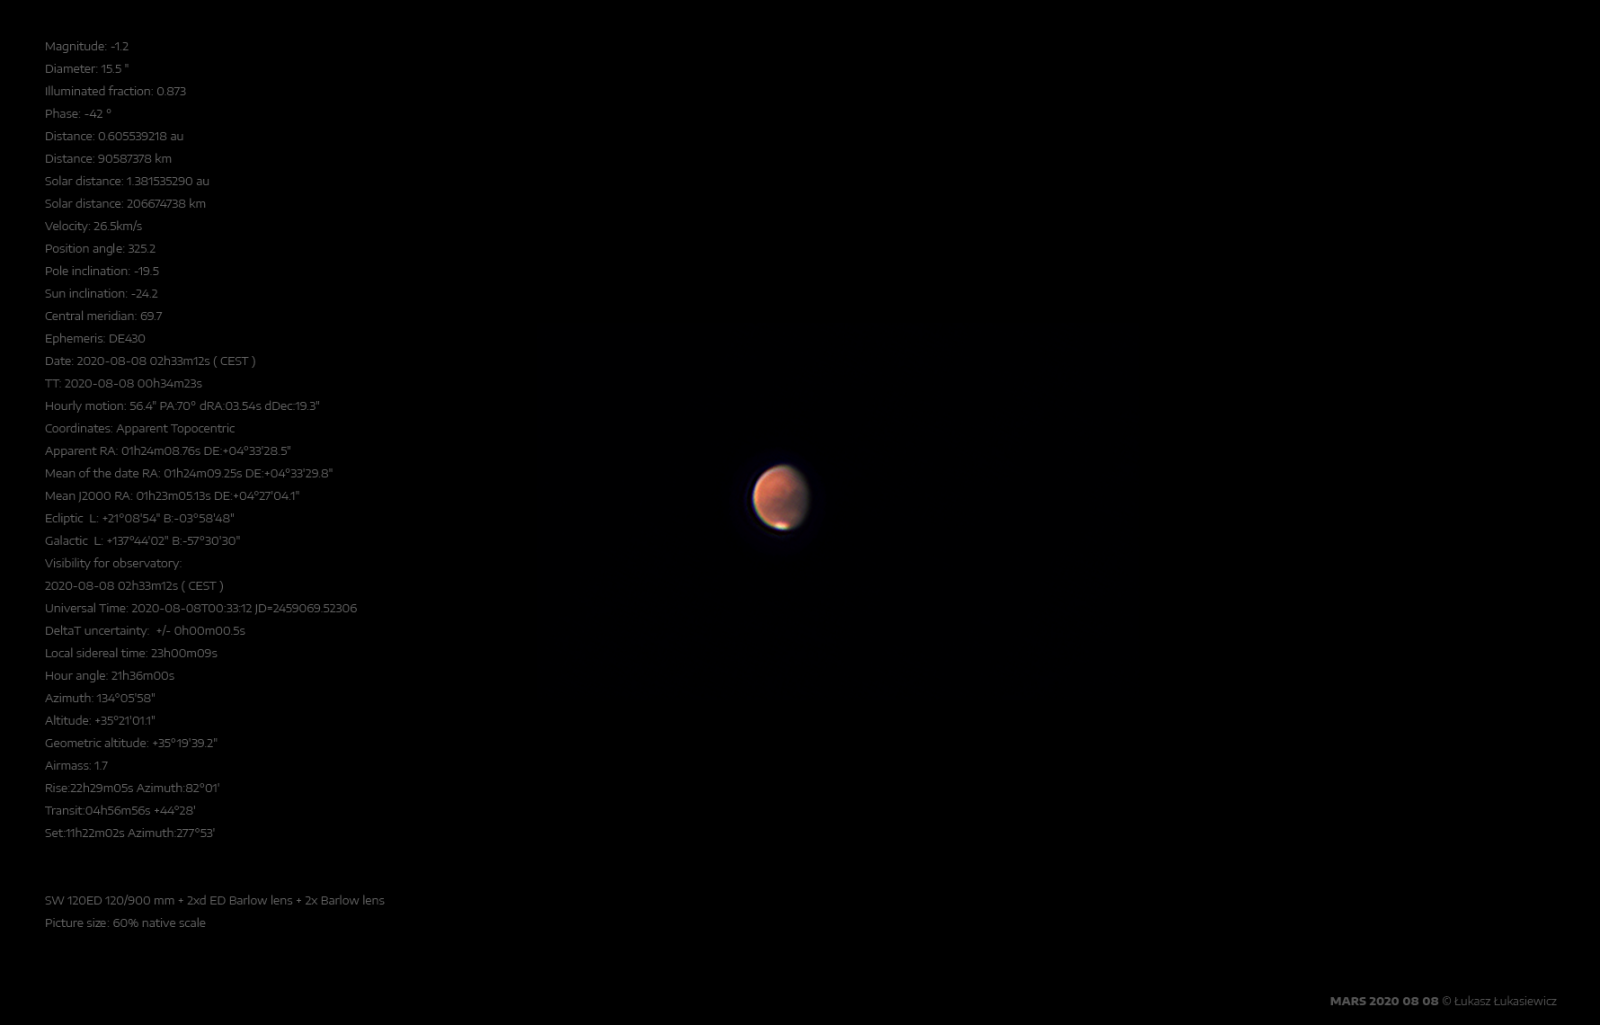 MARS-2020-08-08d.png